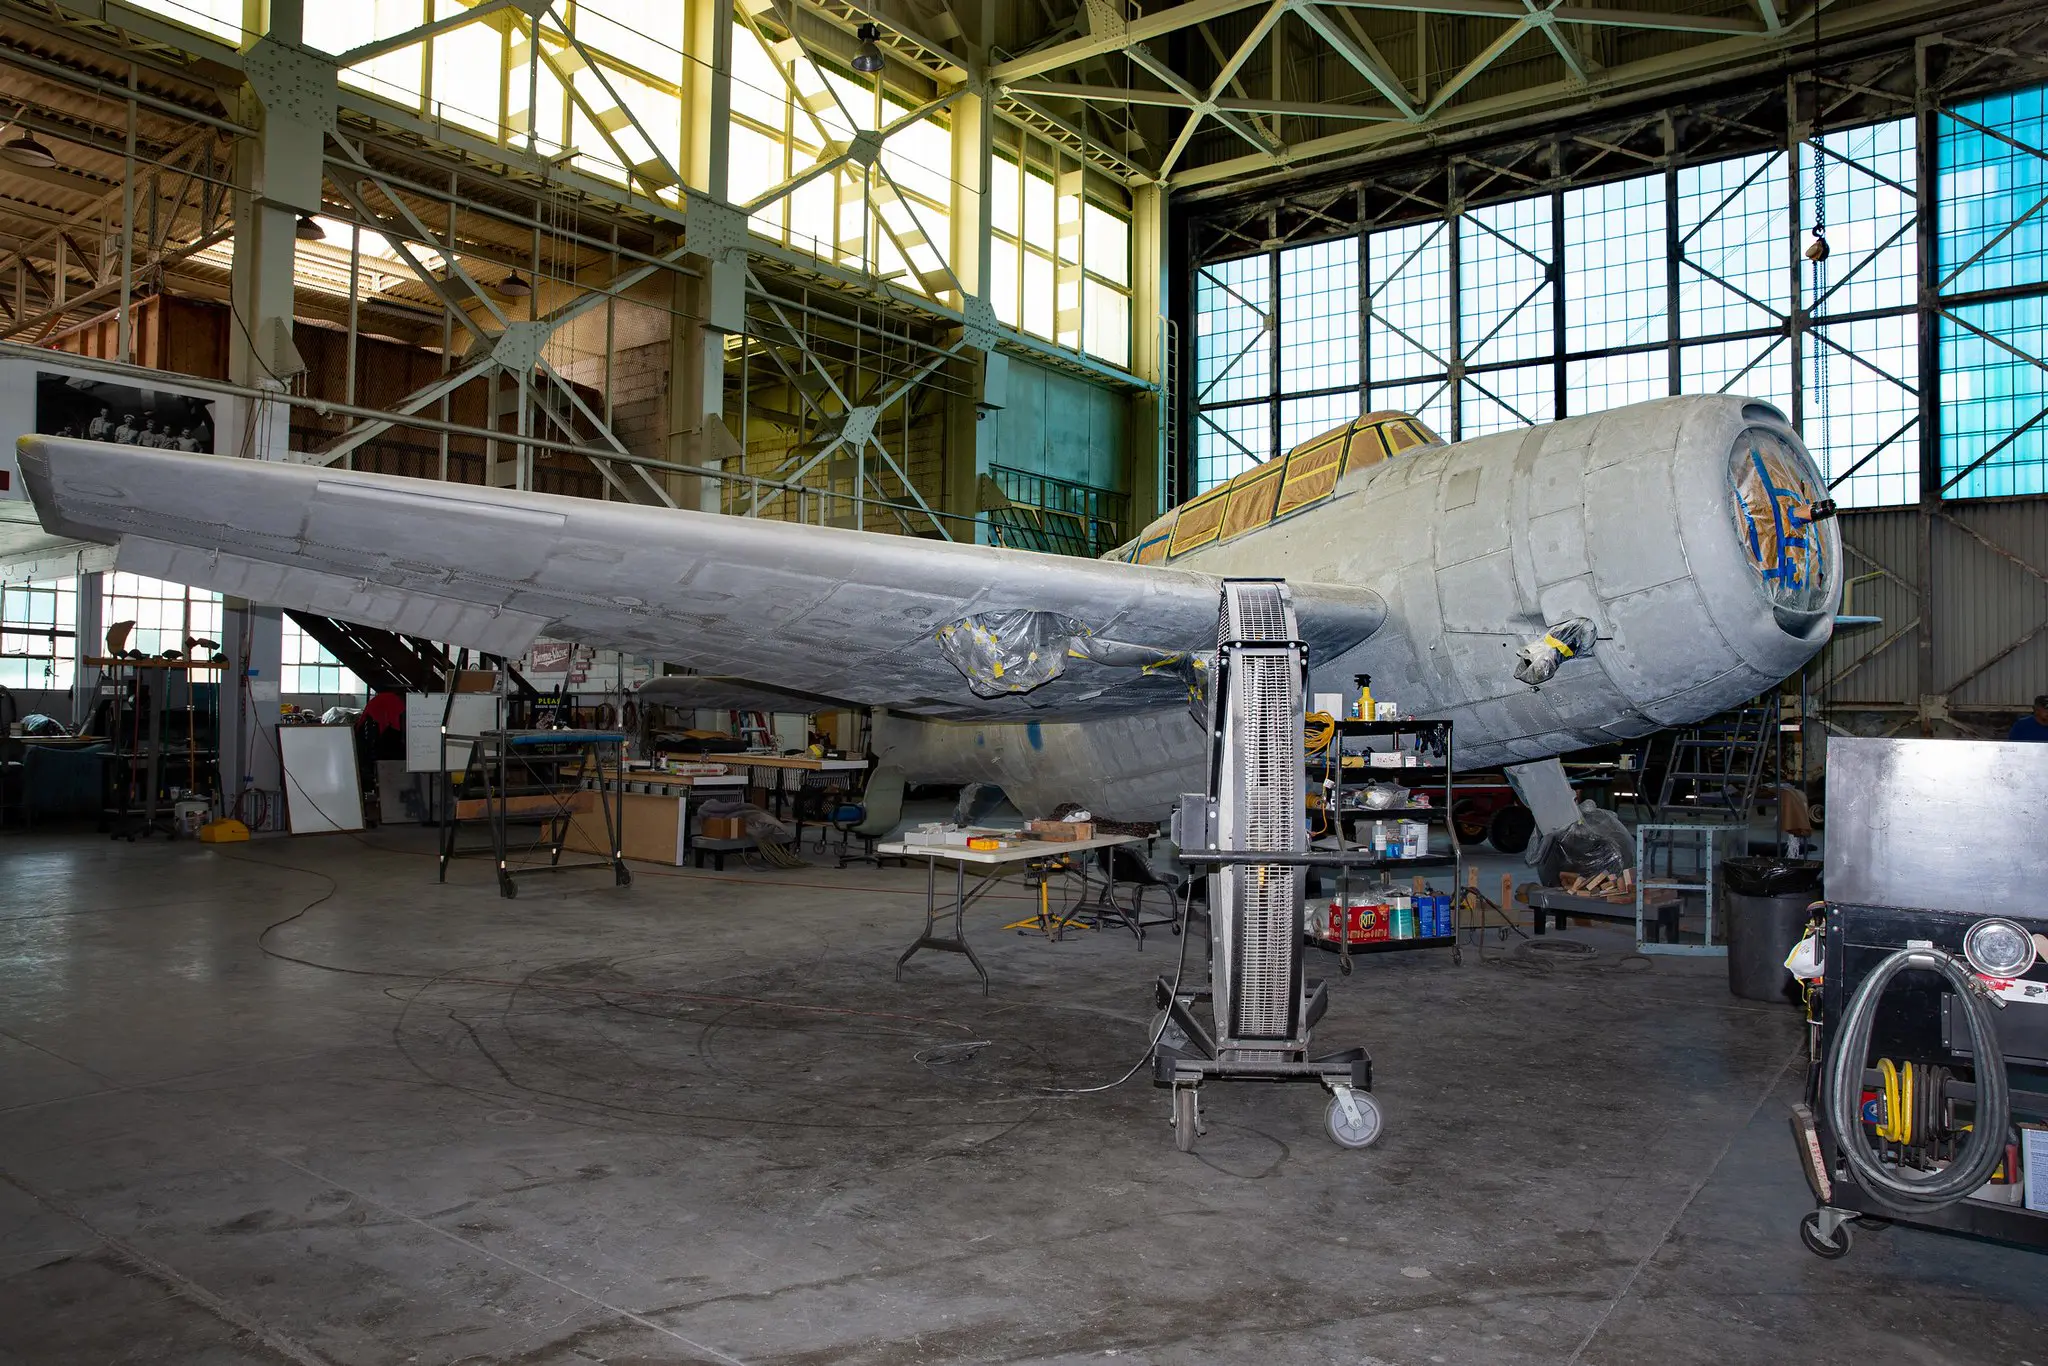 Airplane in Restoration Shop